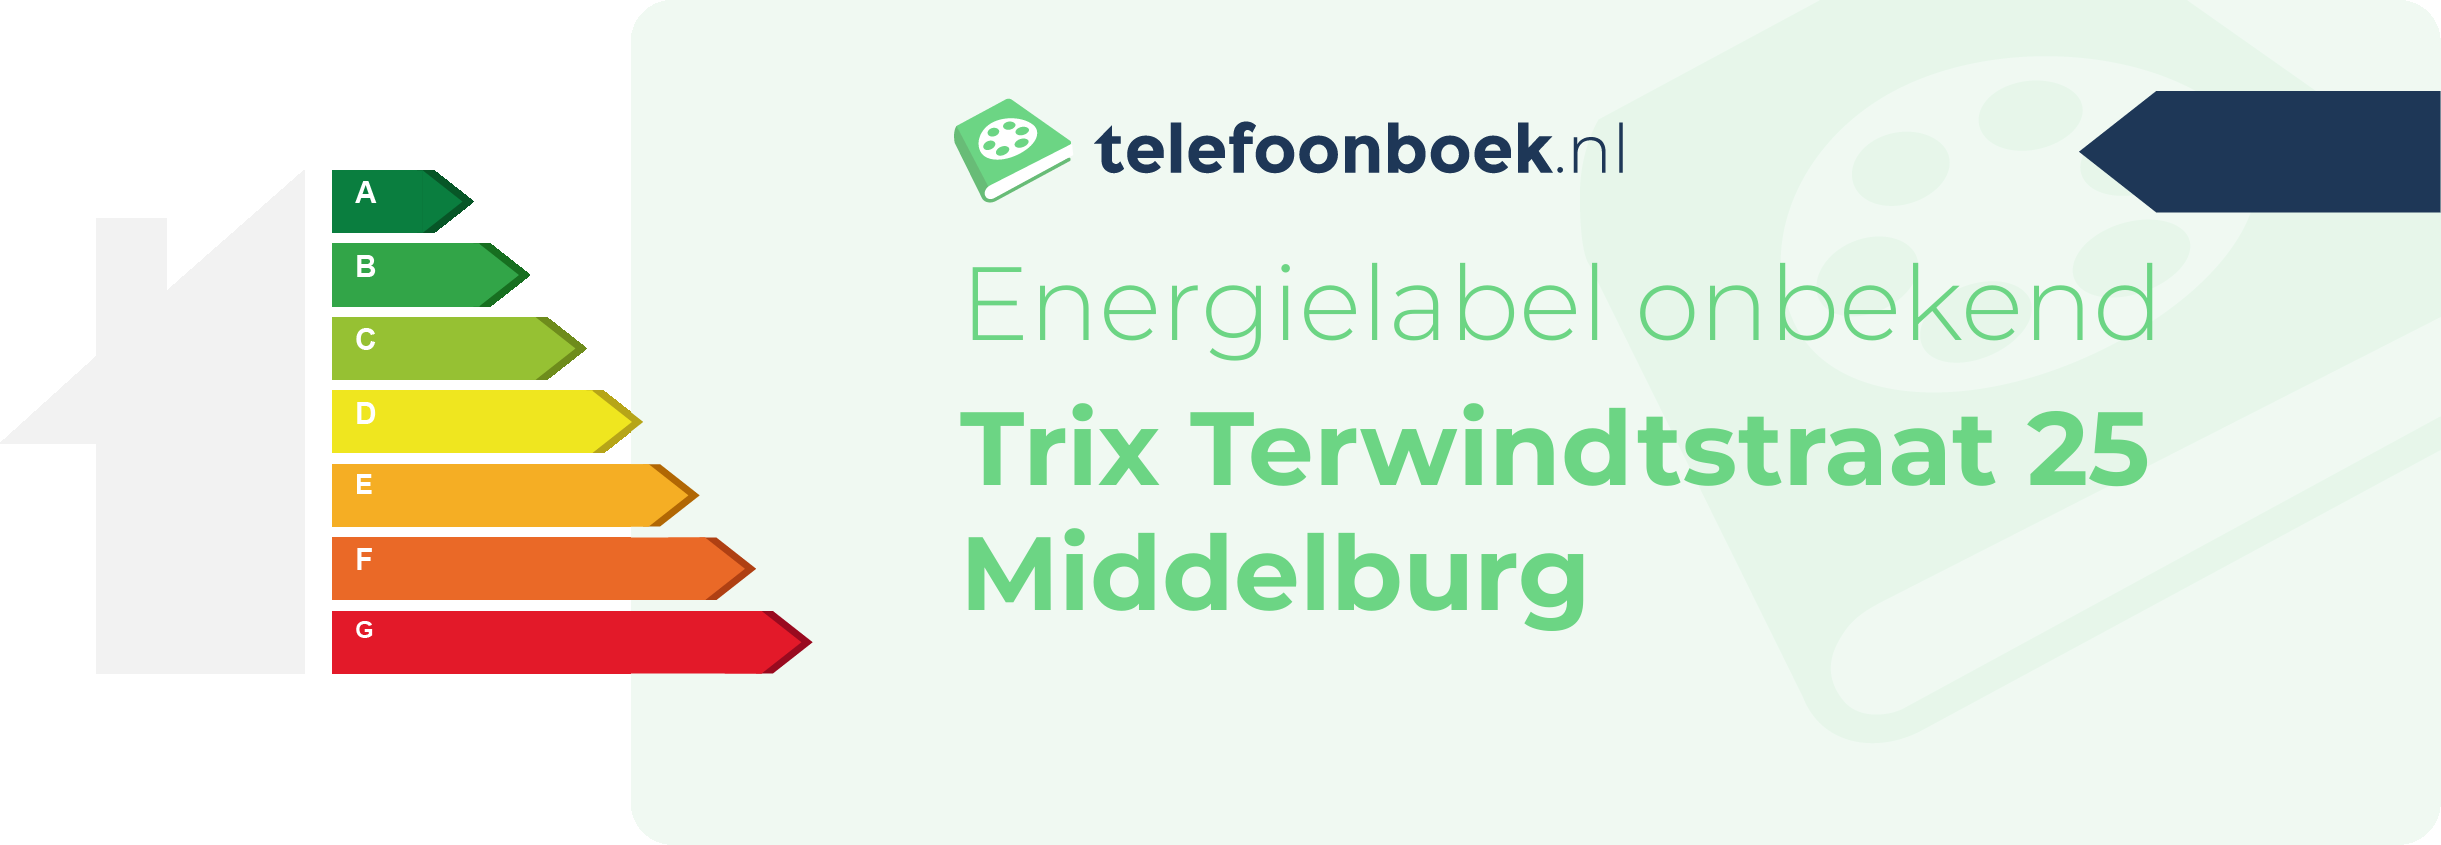 Energielabel Trix Terwindtstraat 25 Middelburg